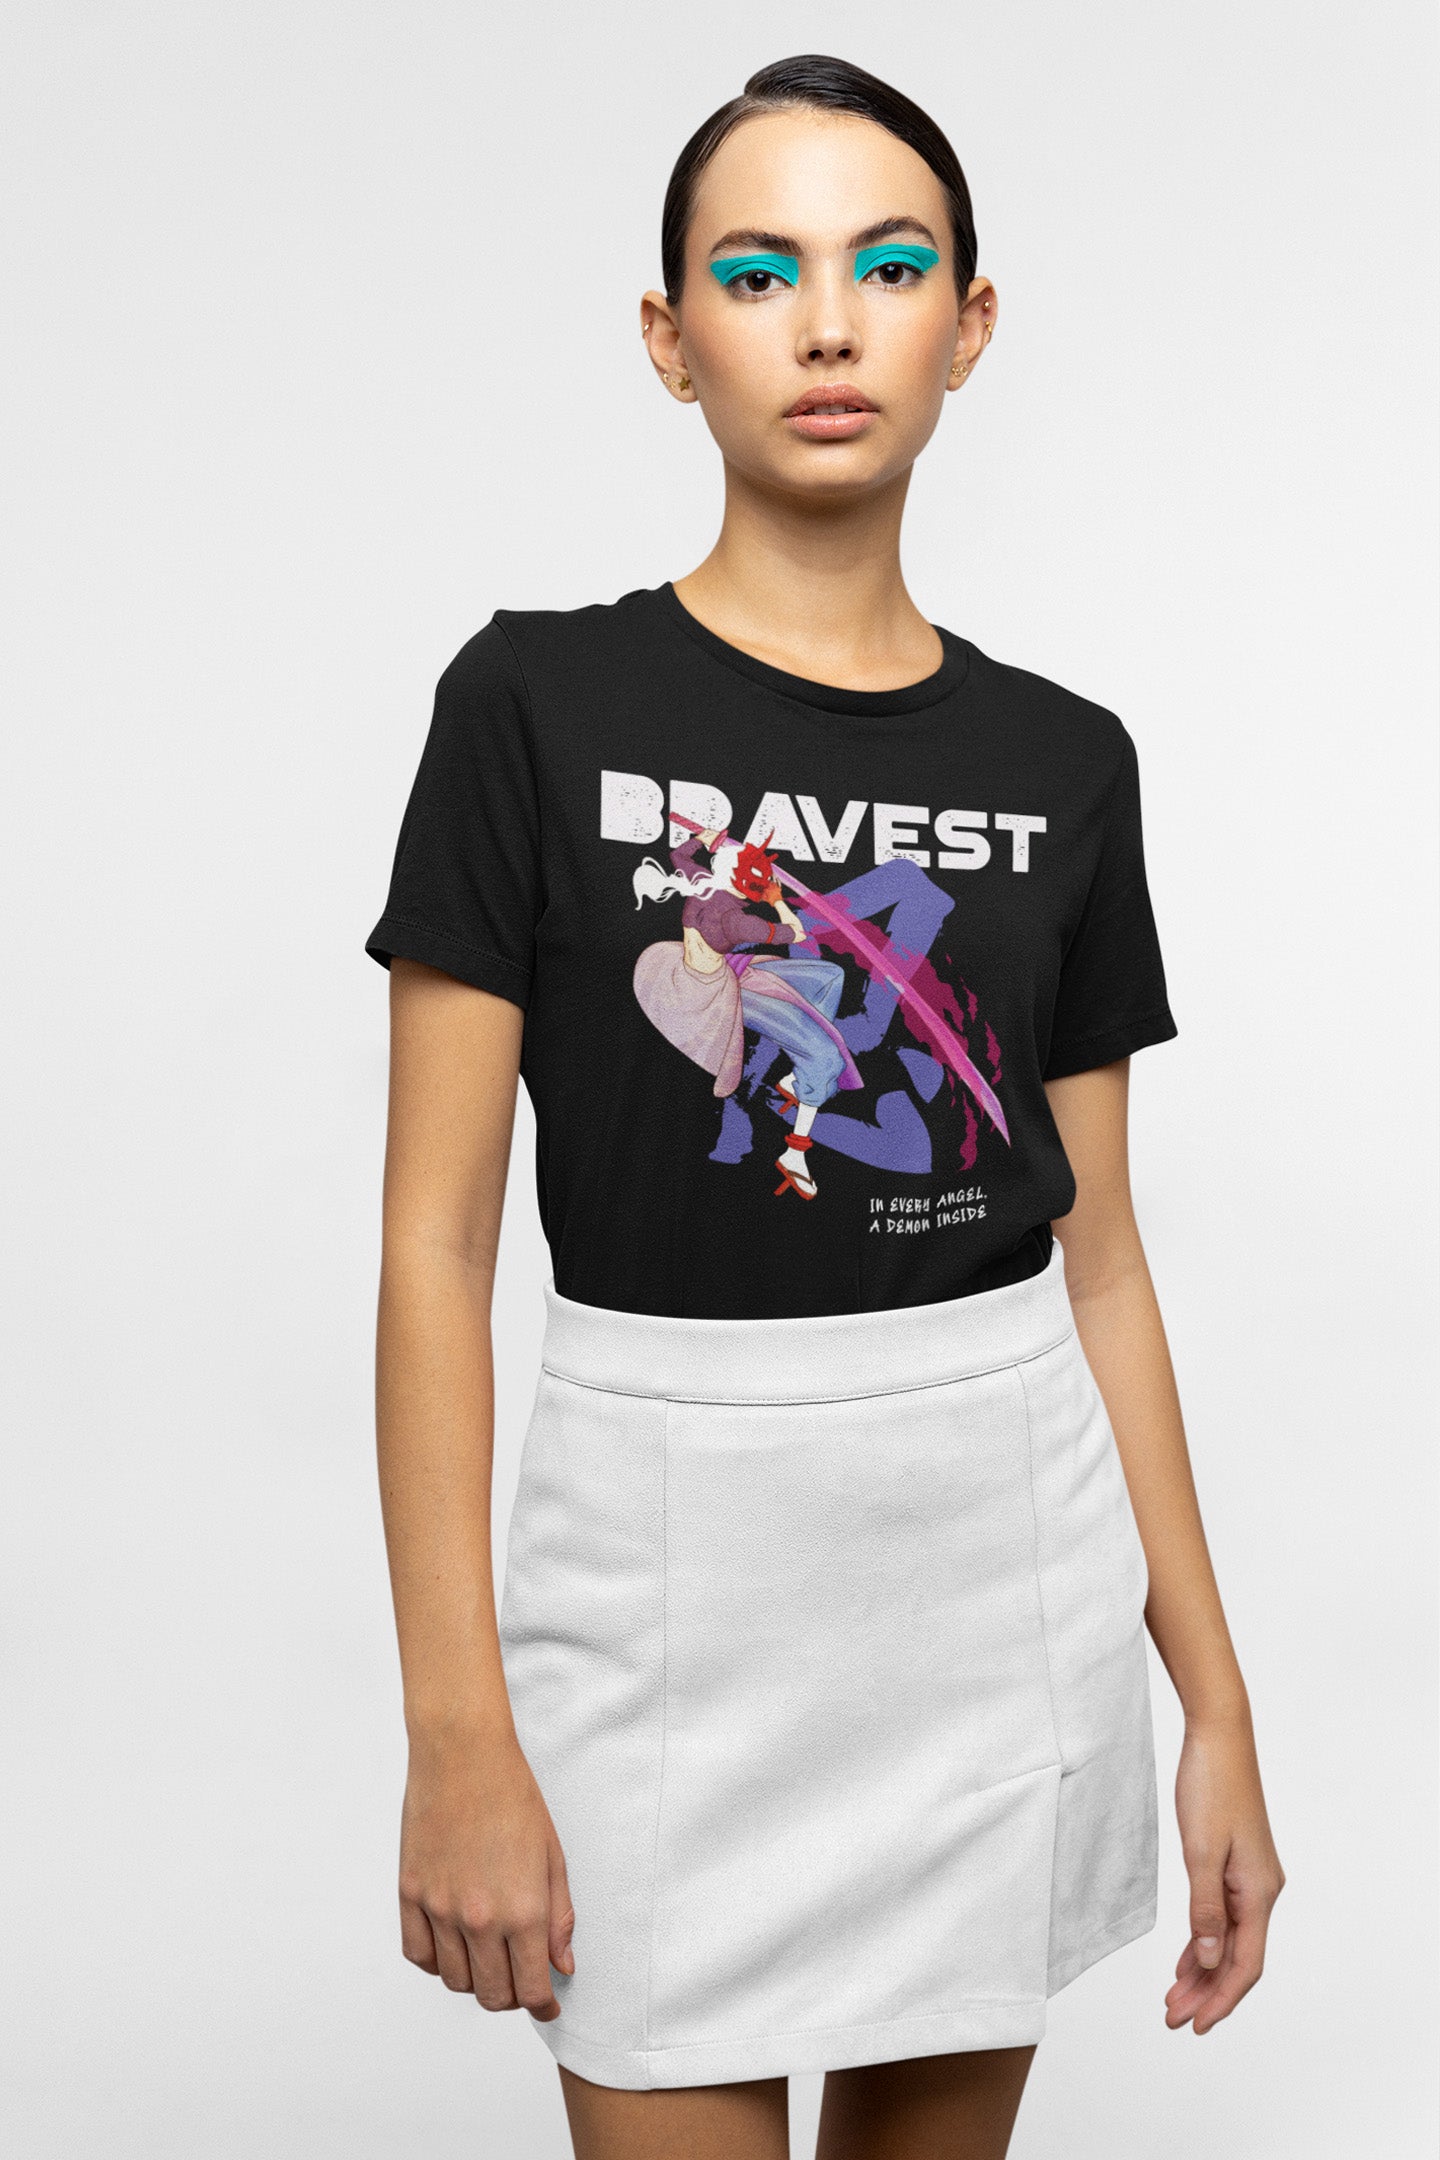 Bravest Regular Fit T-shirt for Women